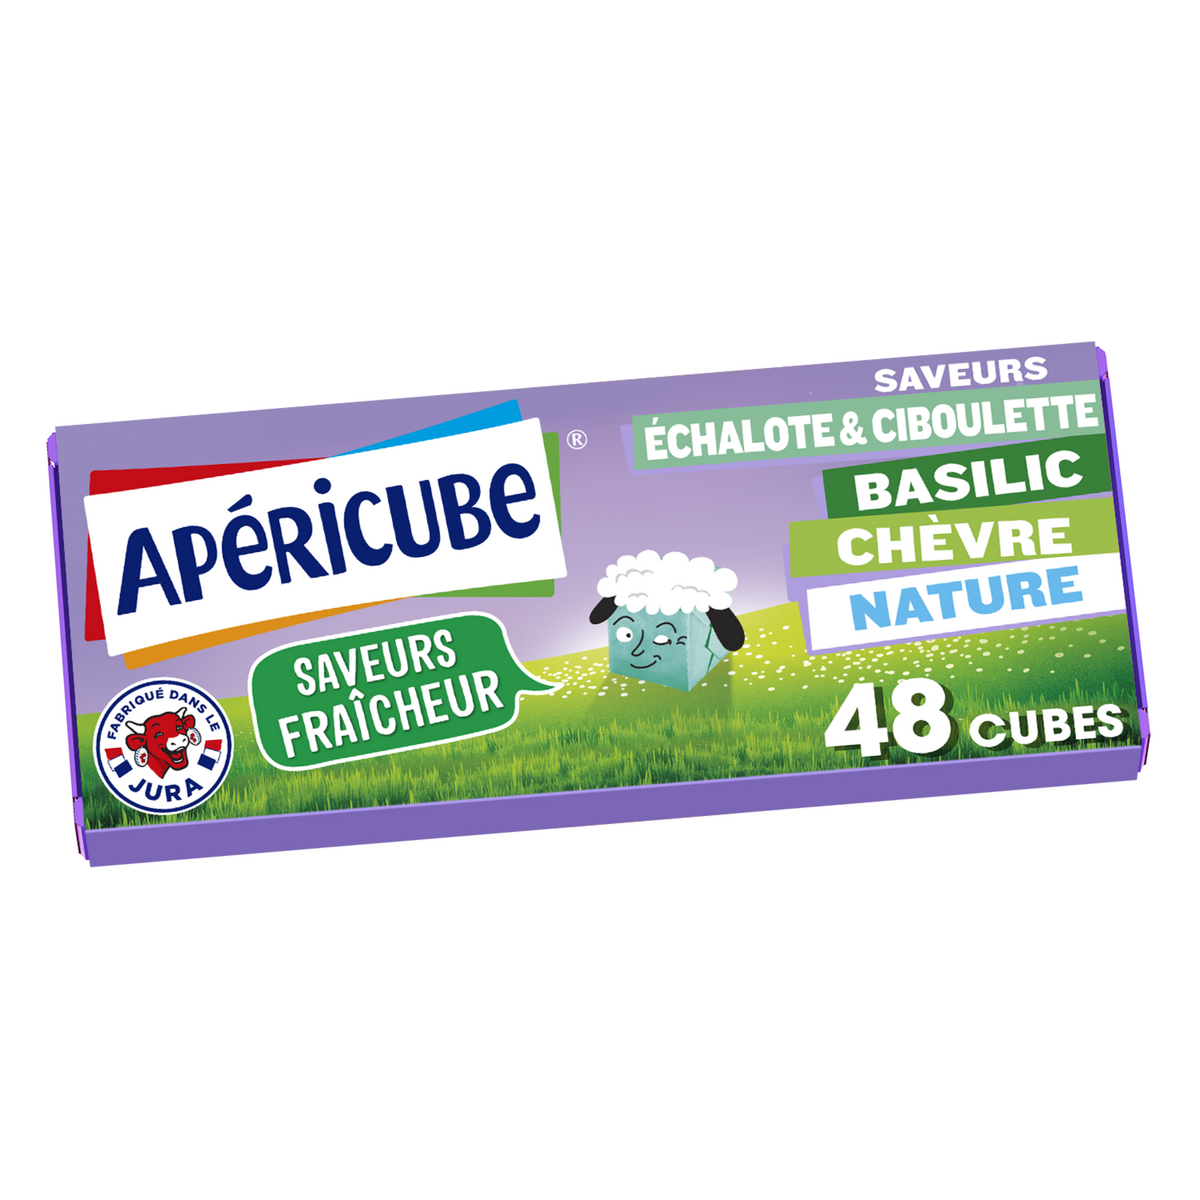 APERICUBE Cubes de fromage apéritif Nature & Saveurs Fraicheurs 48 cubes 250g